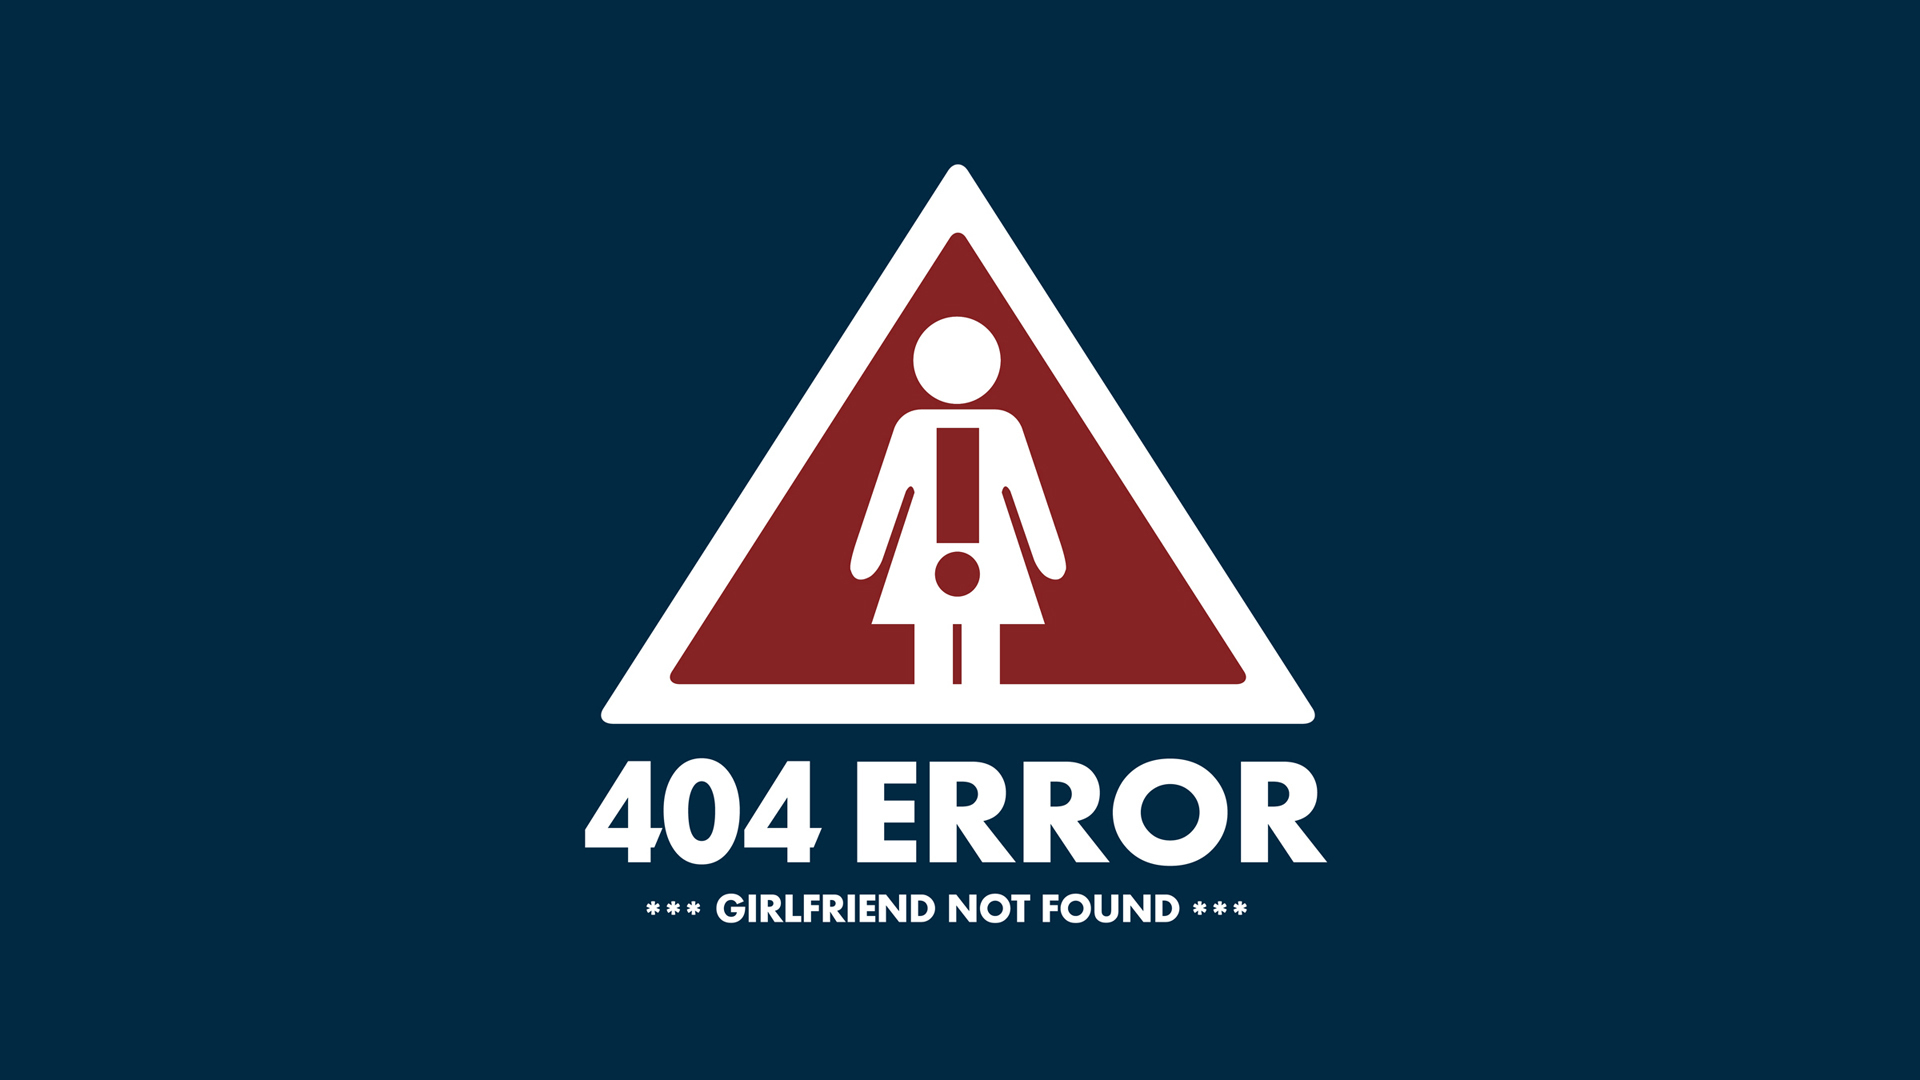 404 tapete,schriftart,beschilderung,schild,linie,grafik